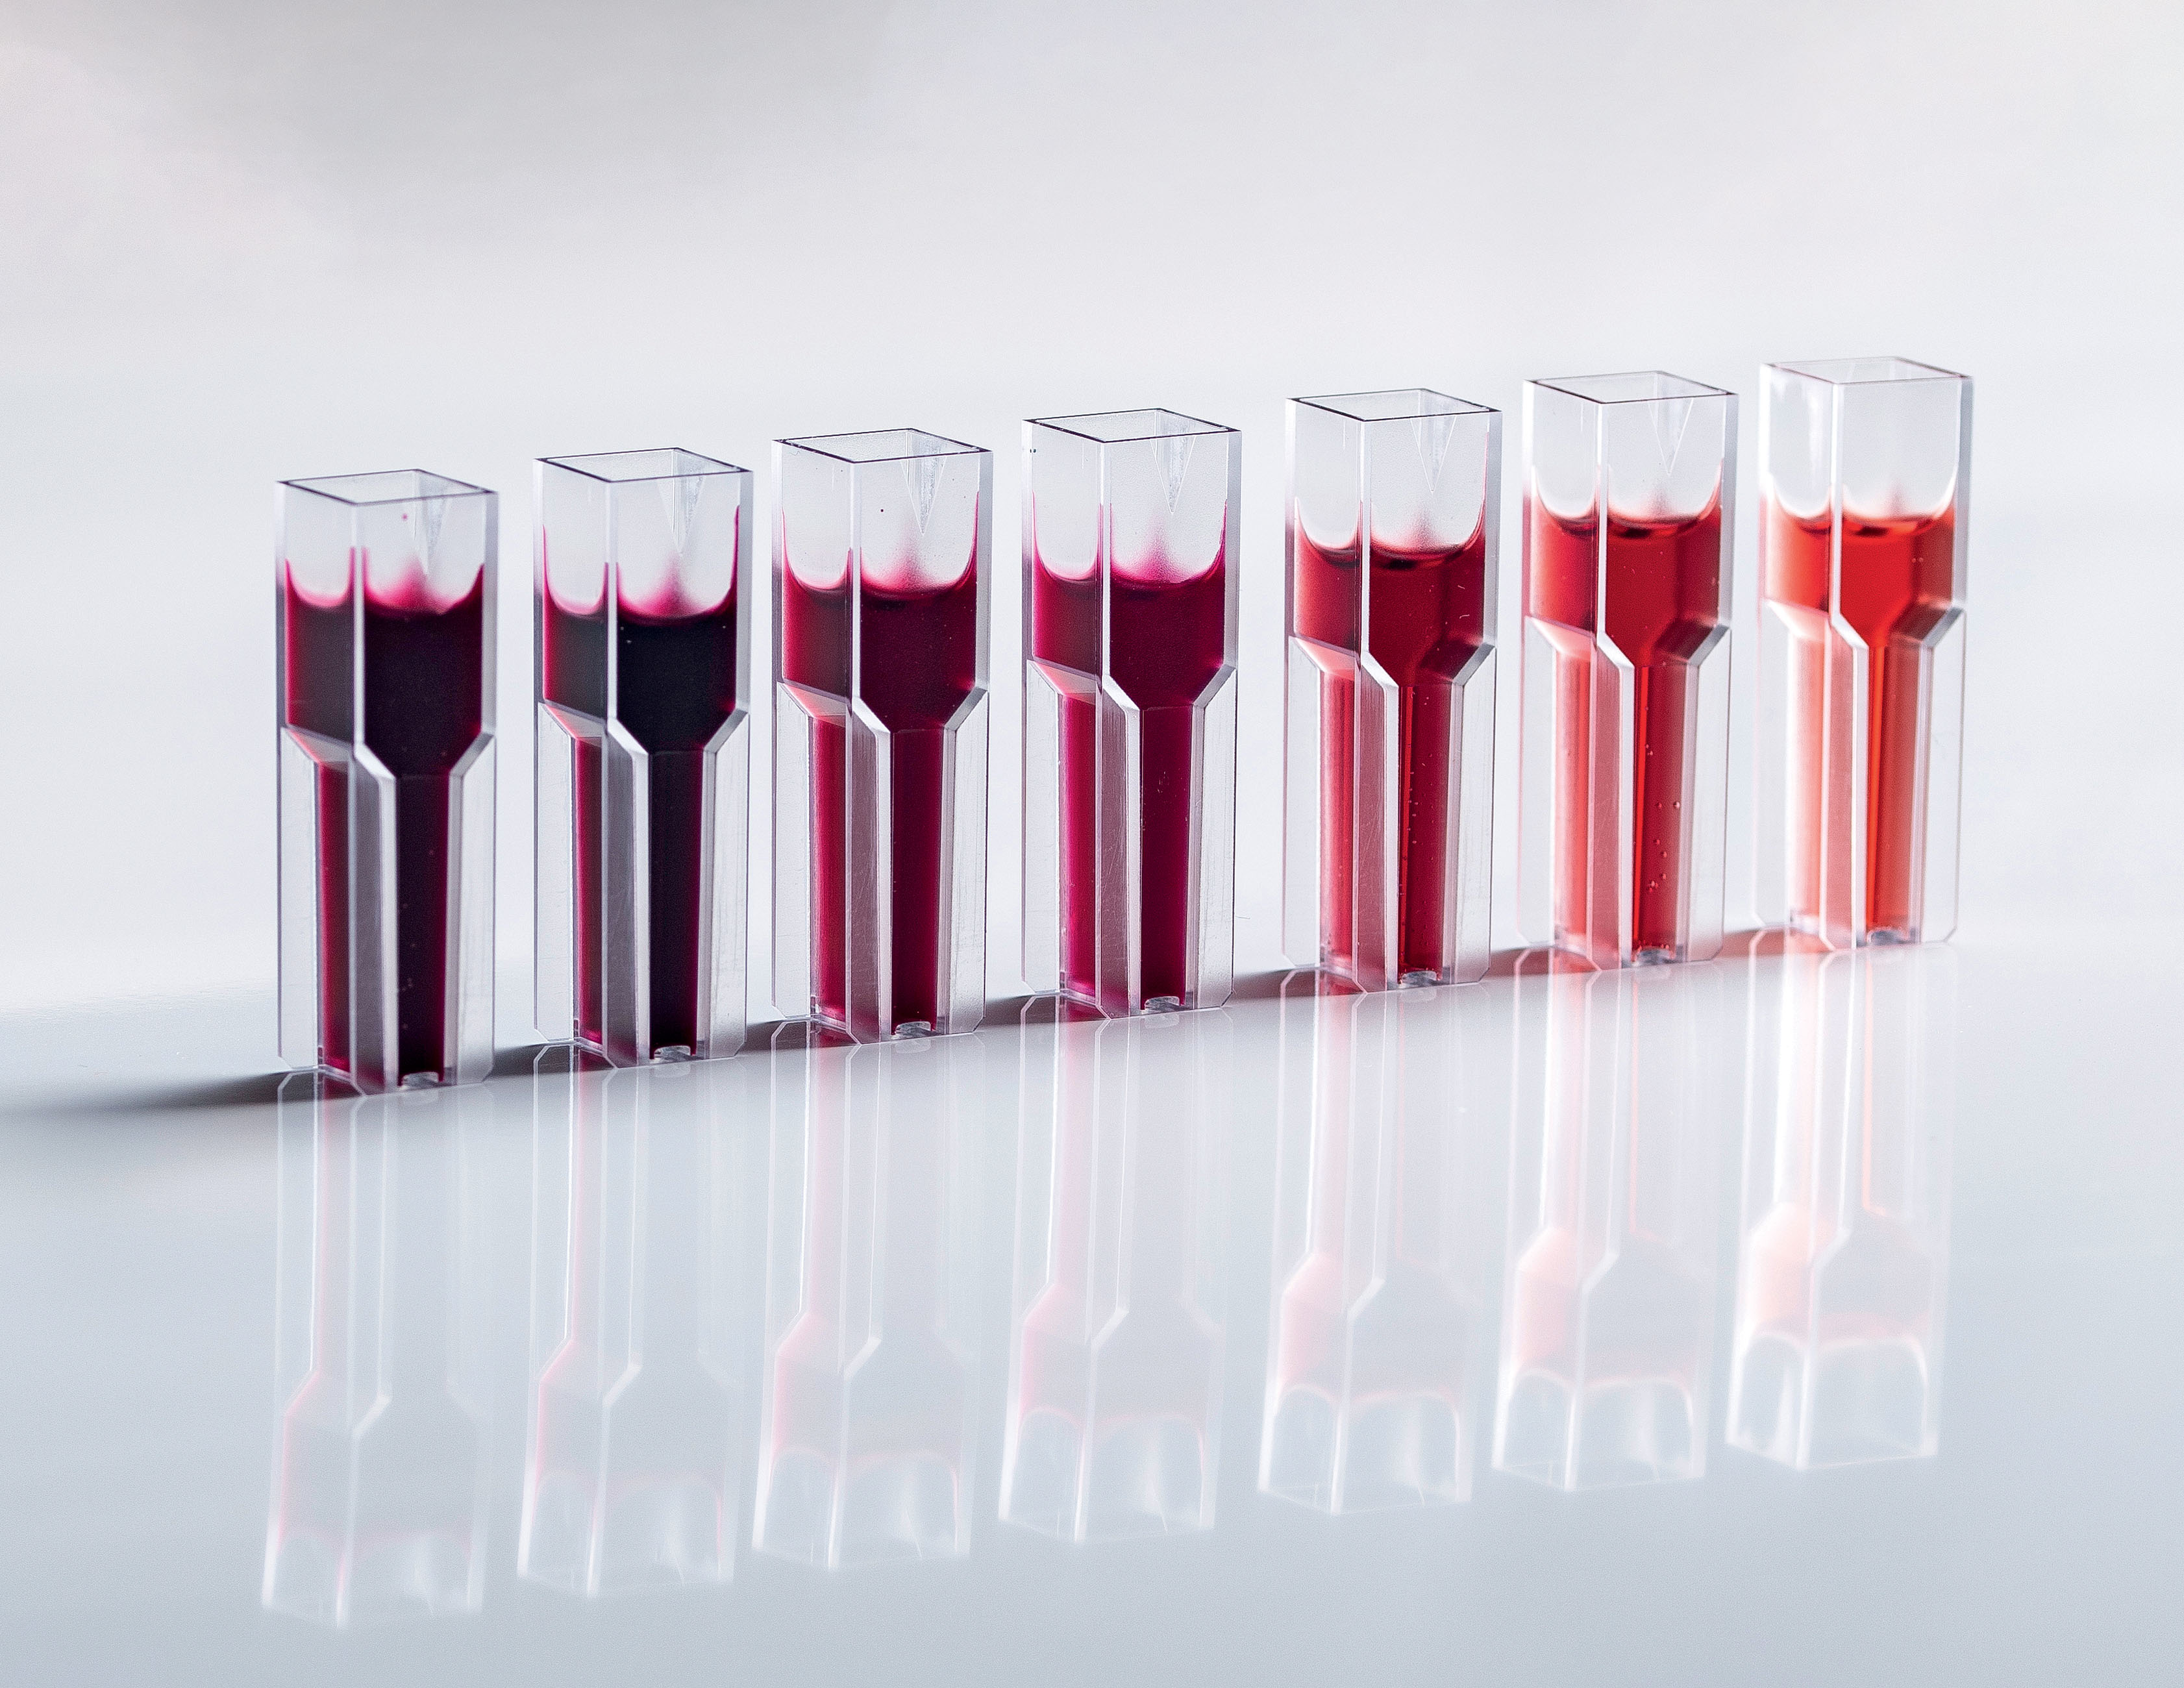 Mit Hilfe von spektroskopischen Methoden kann die Konzentration von Polyphenolen in Rotwein ohne aufwändige Geräte abgeschätzt werden.